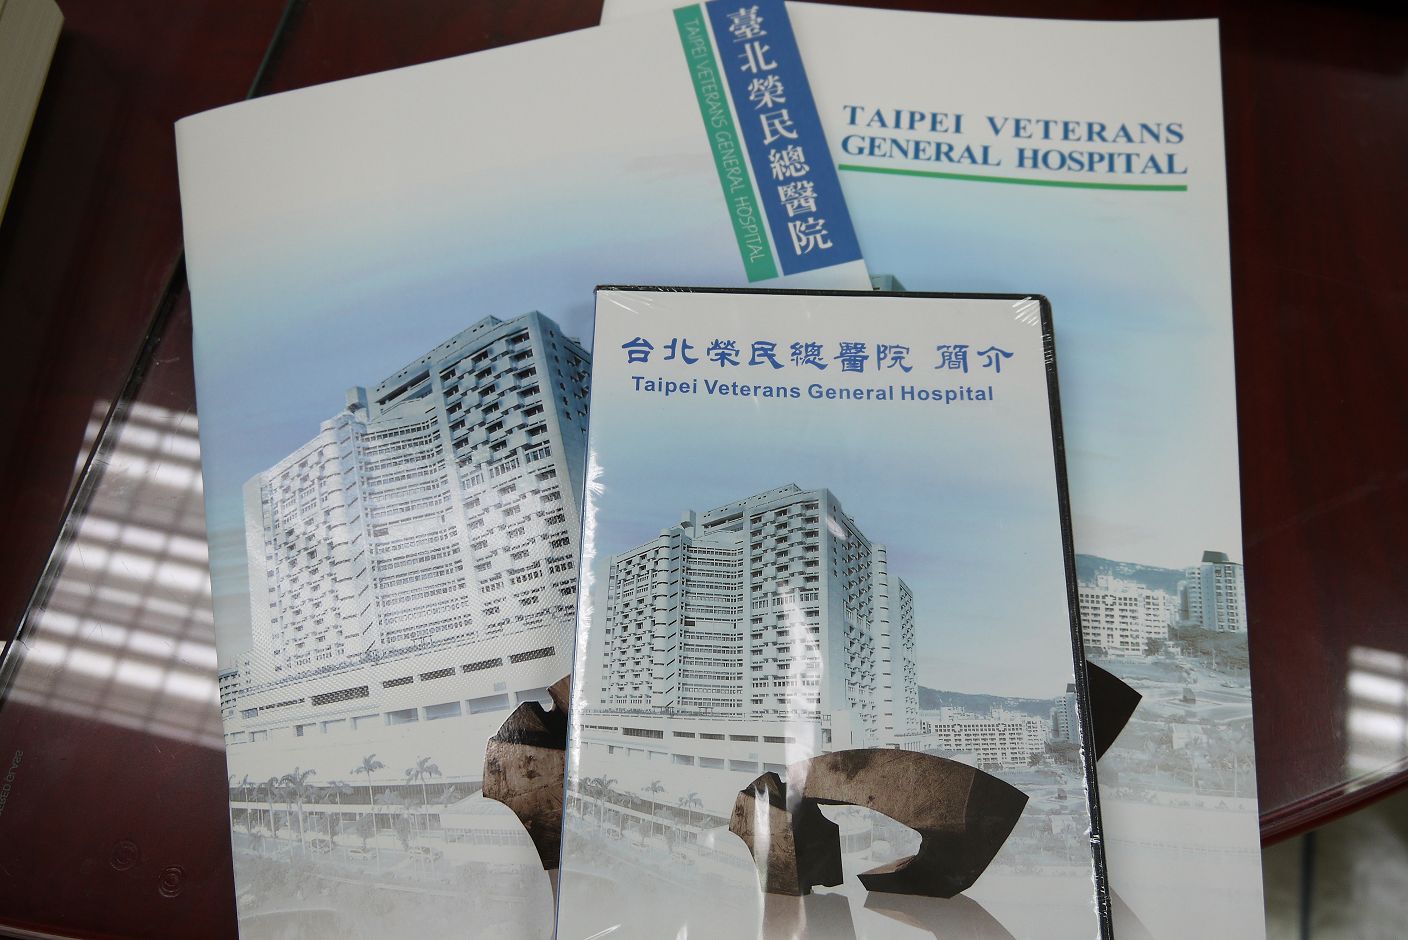 由公共事務室(公關組)提供台北榮民總醫院簡介及DVD.jpg